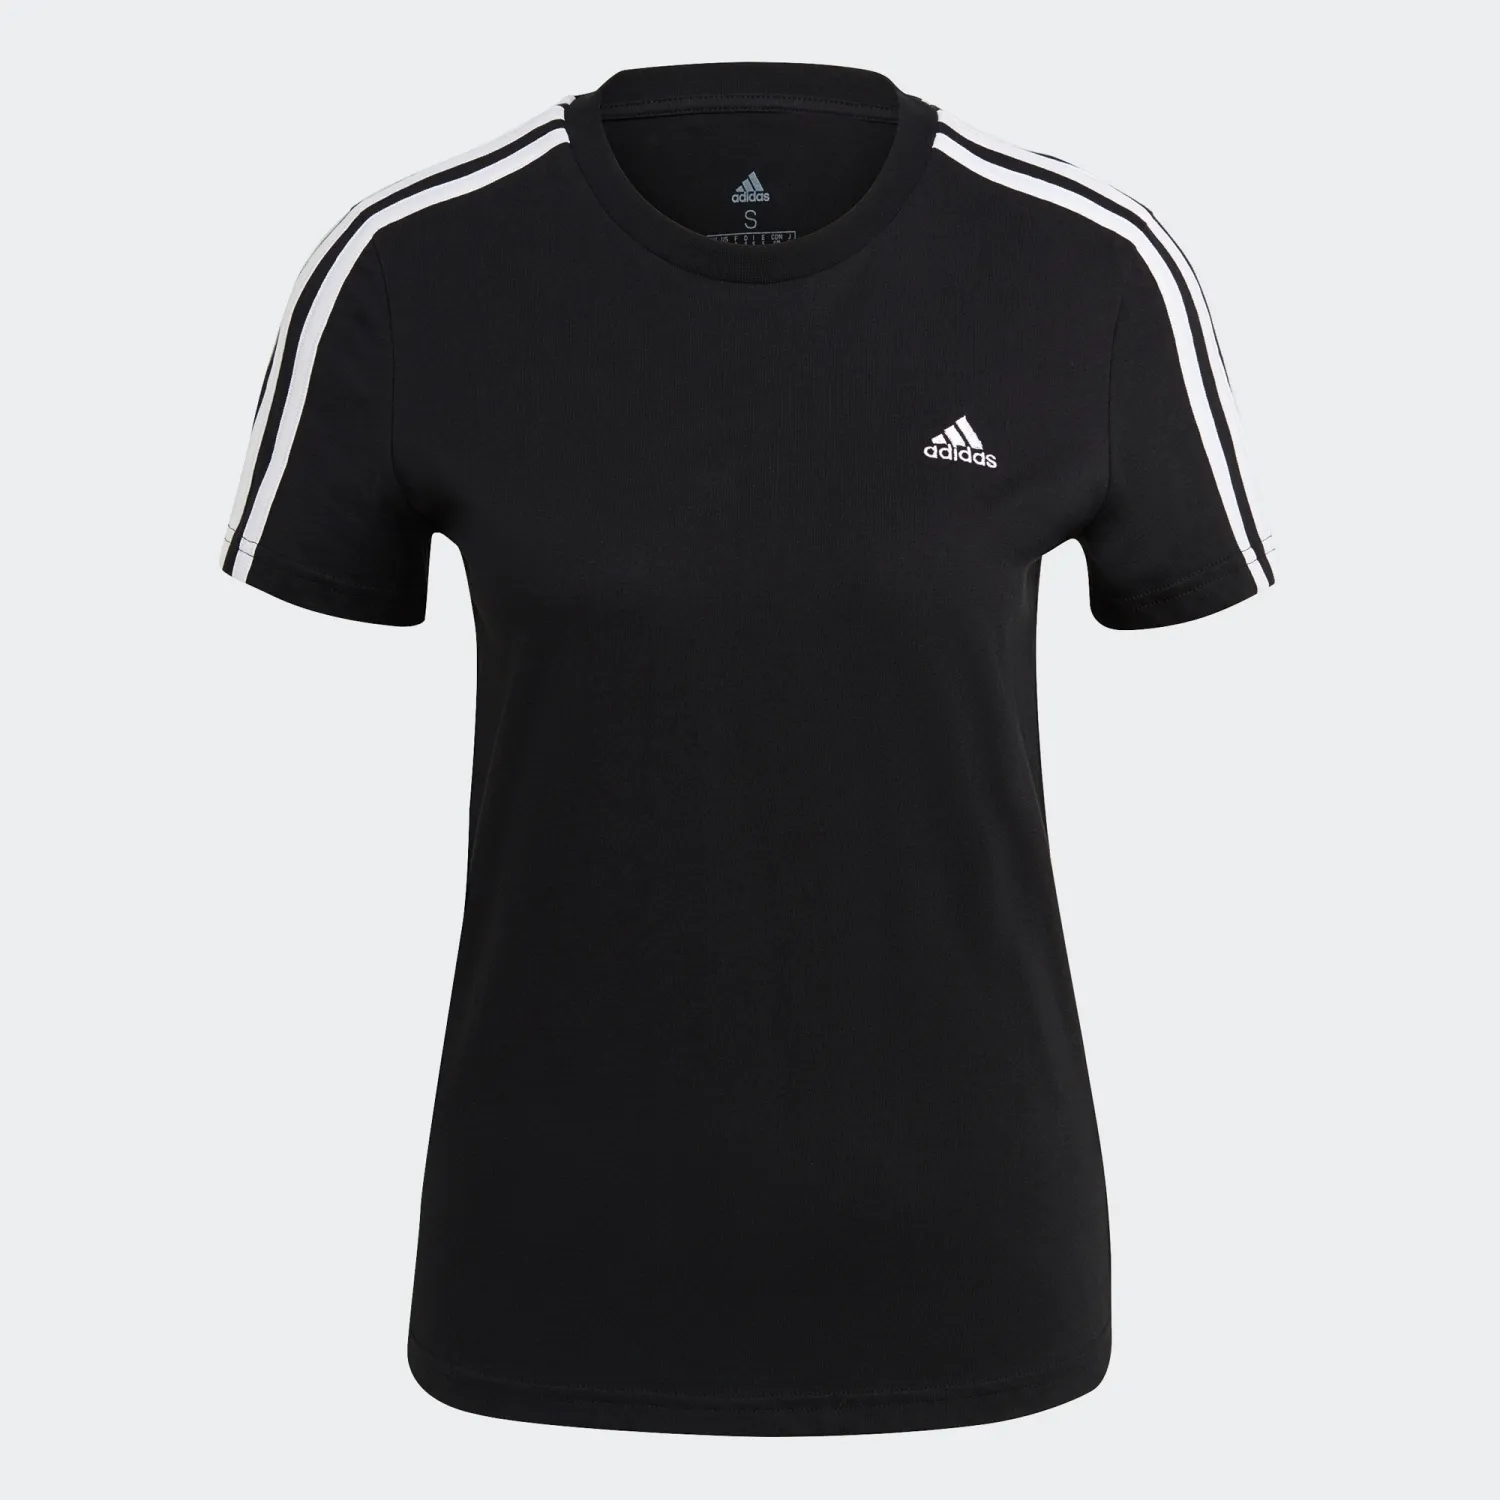 adidas LOUNGEWEAR Essentials Slim 3-Streifen T-Shirt Damen schwarz/weiß - S